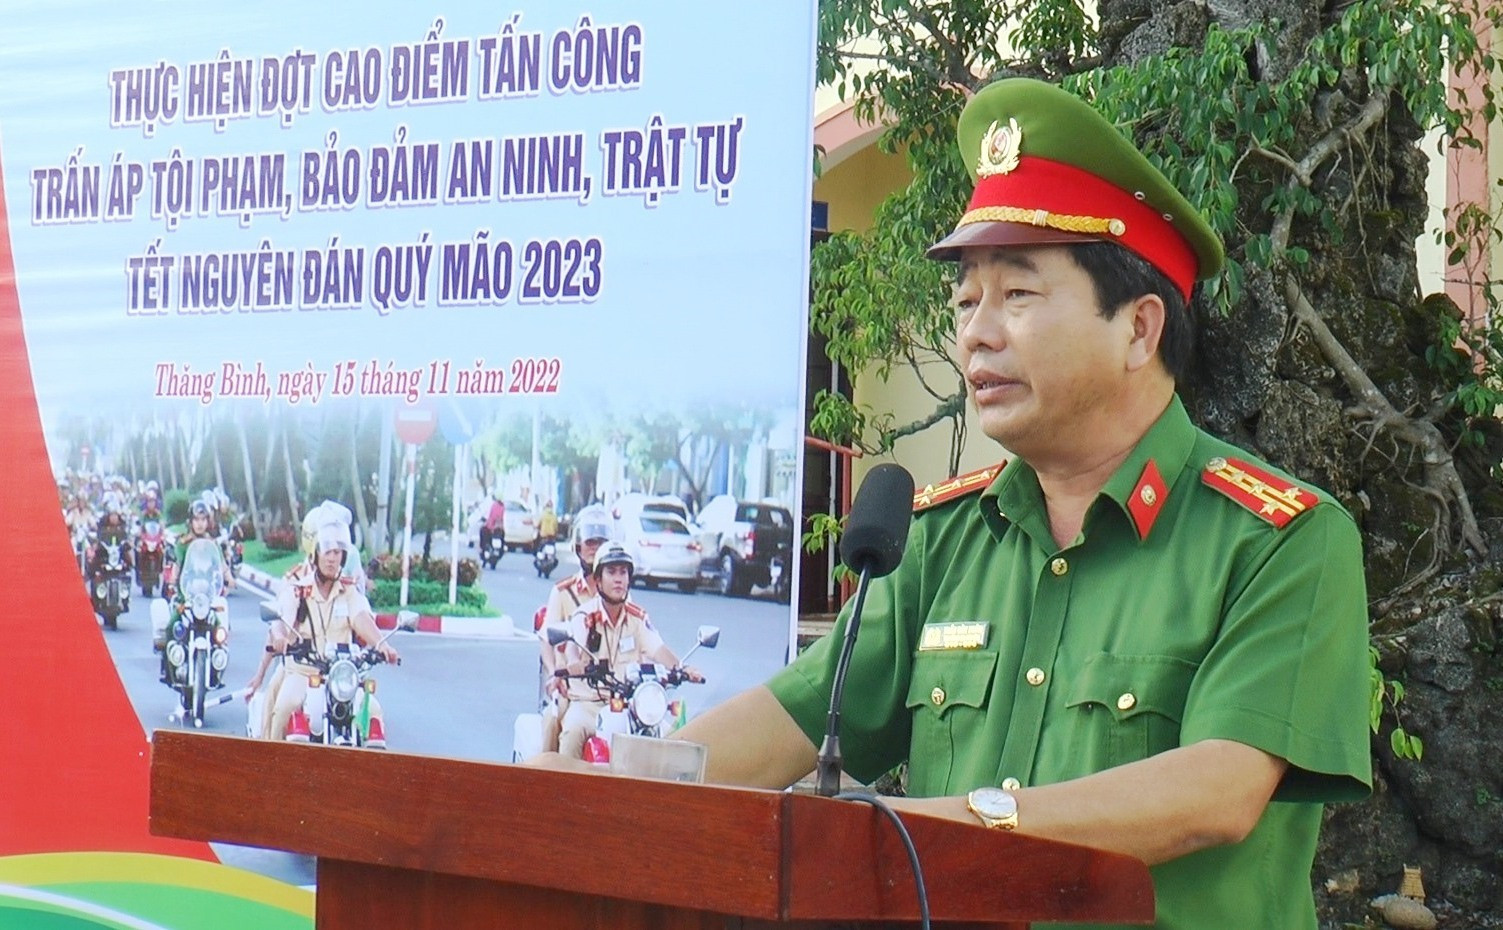 Đại tá Trần Văn Xuân, Trưởng Công an huyện Thăng Bình phát lệnh ra quân. Ảnh: Đ.H